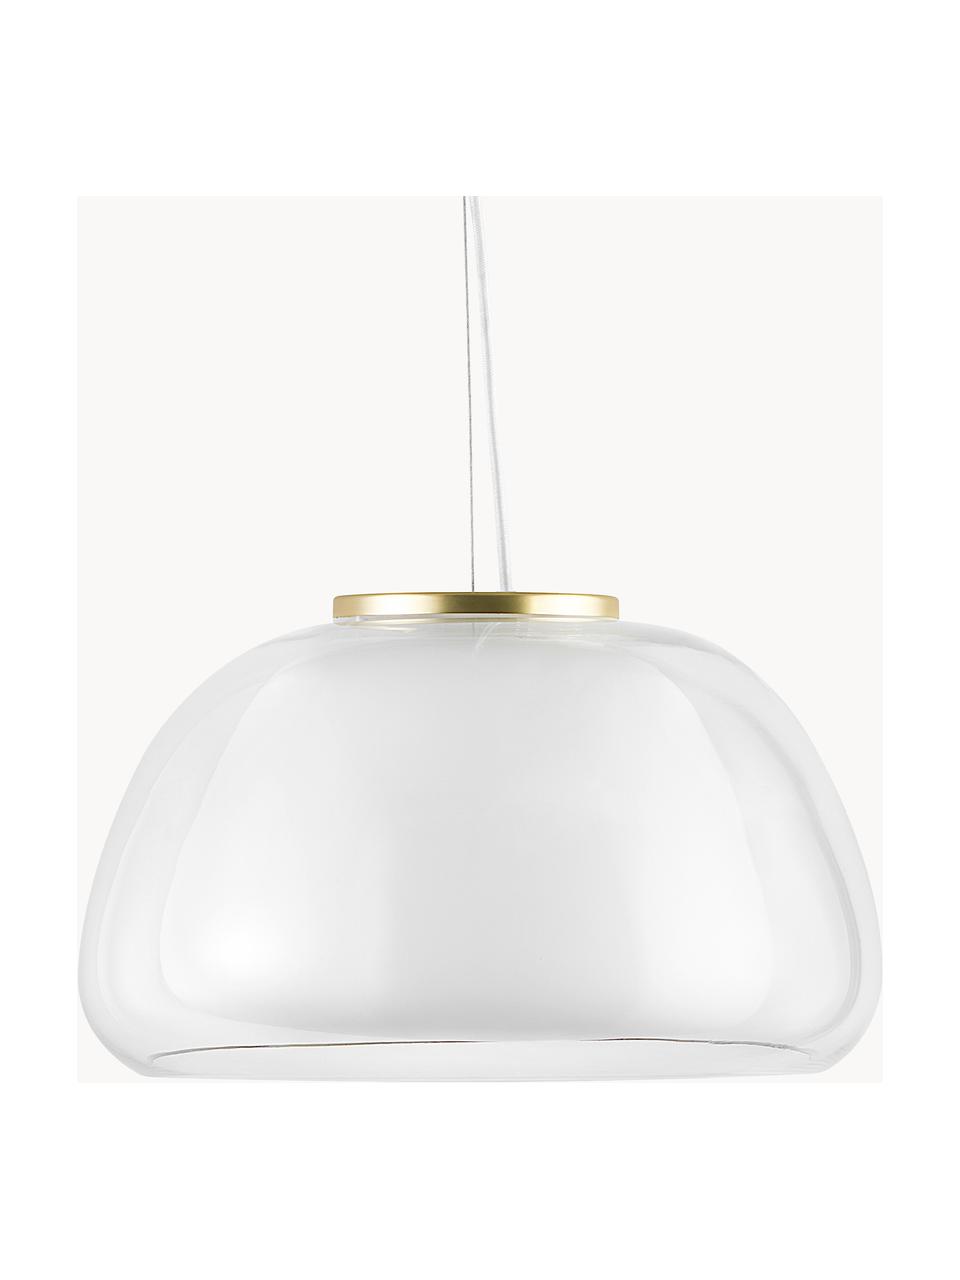 Lampa wisząca ze szkła Jelly, Transparentny, biały, Ø 39 x W 23 cm